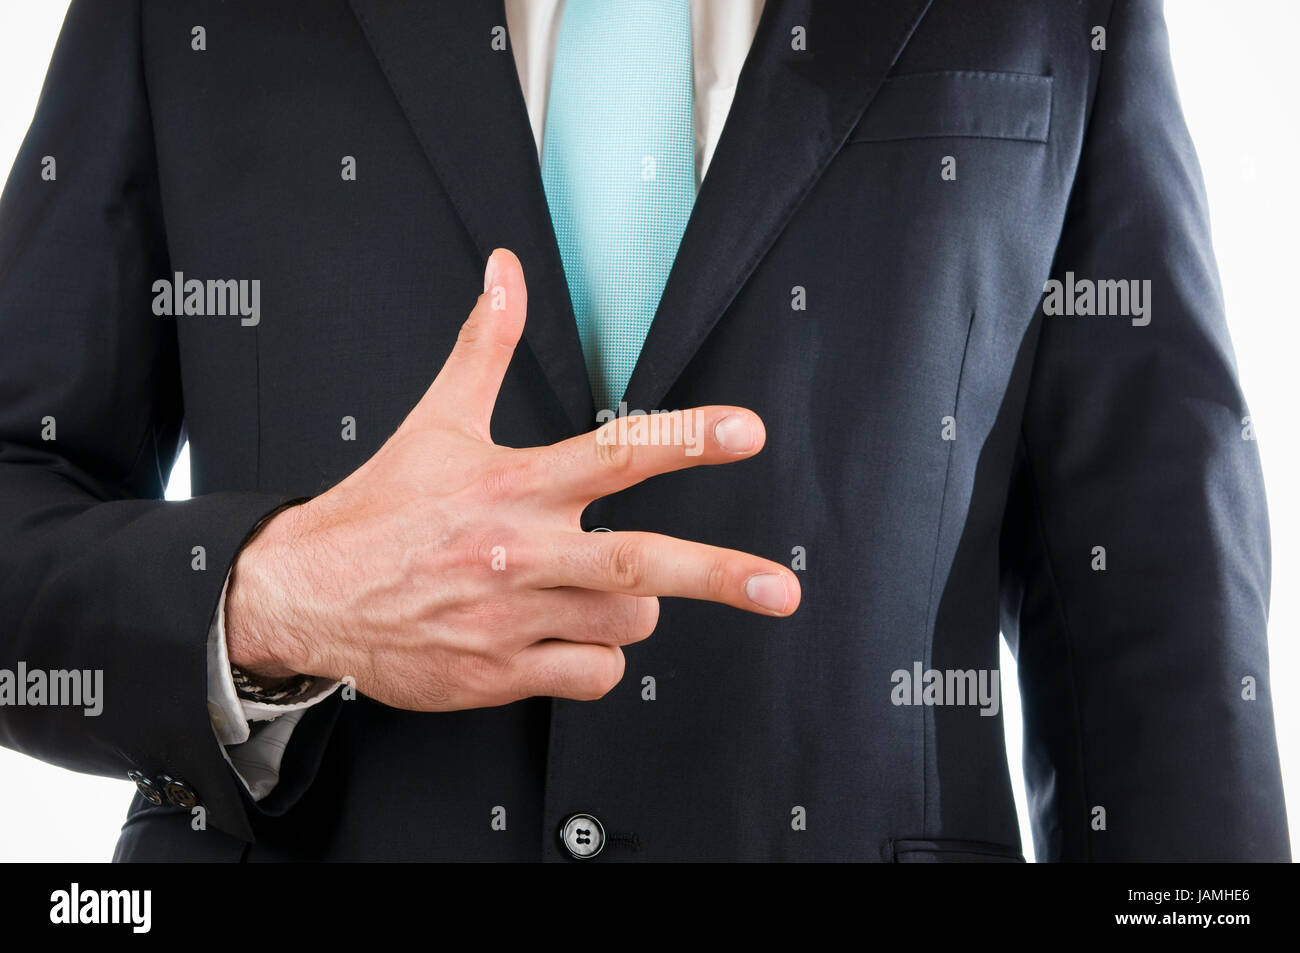 Brust-und-Bauch-Ansicht eines jungen Mannes im schwarzen Anzug mit vor sich gehaltener rechter Hand die '3' anzeigend (drei Finger) Stock Photo